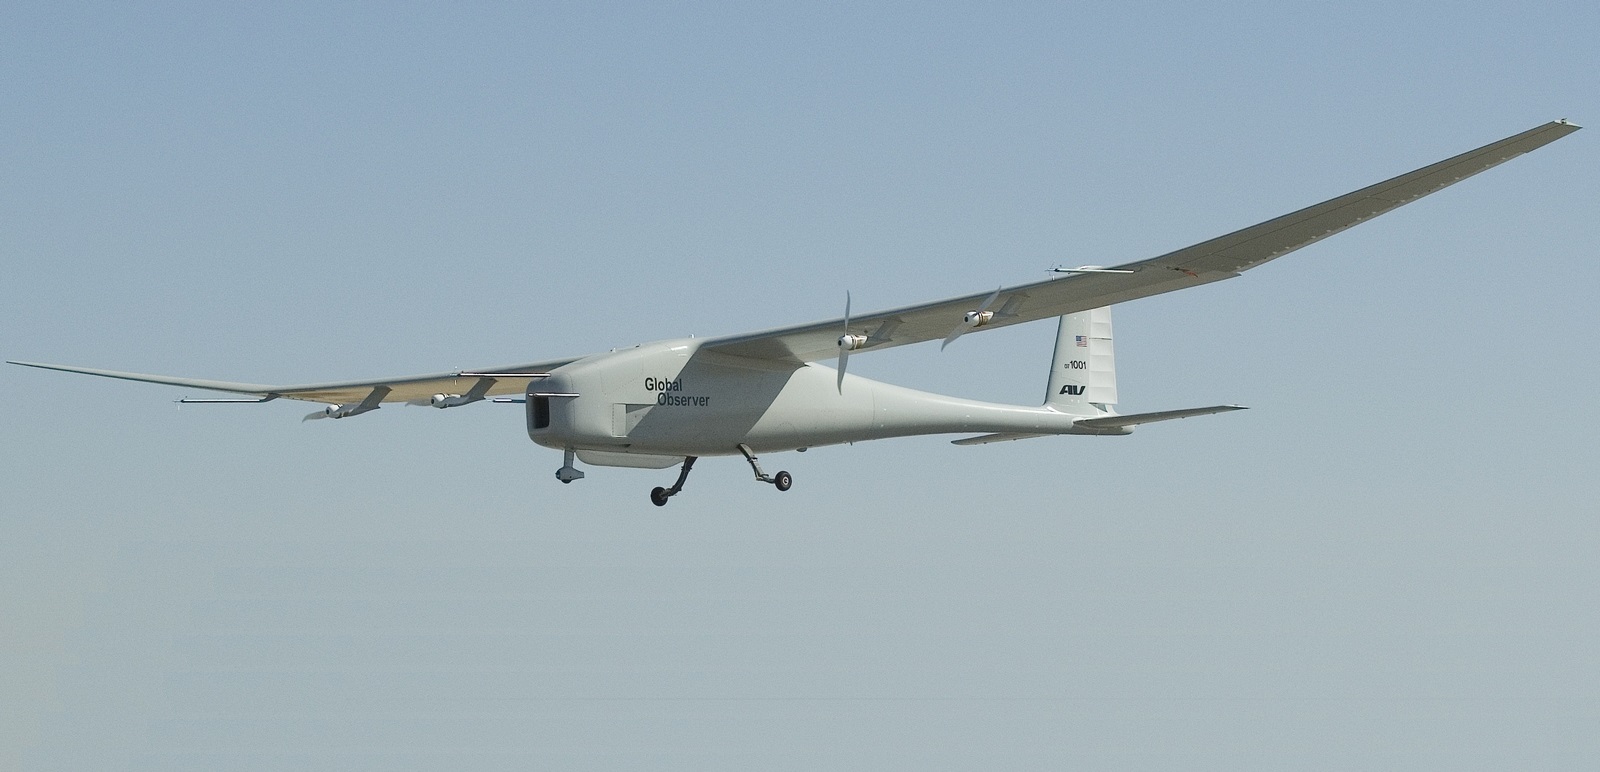 Yerli insansız hava aracı Puma görev yapmaya başladı